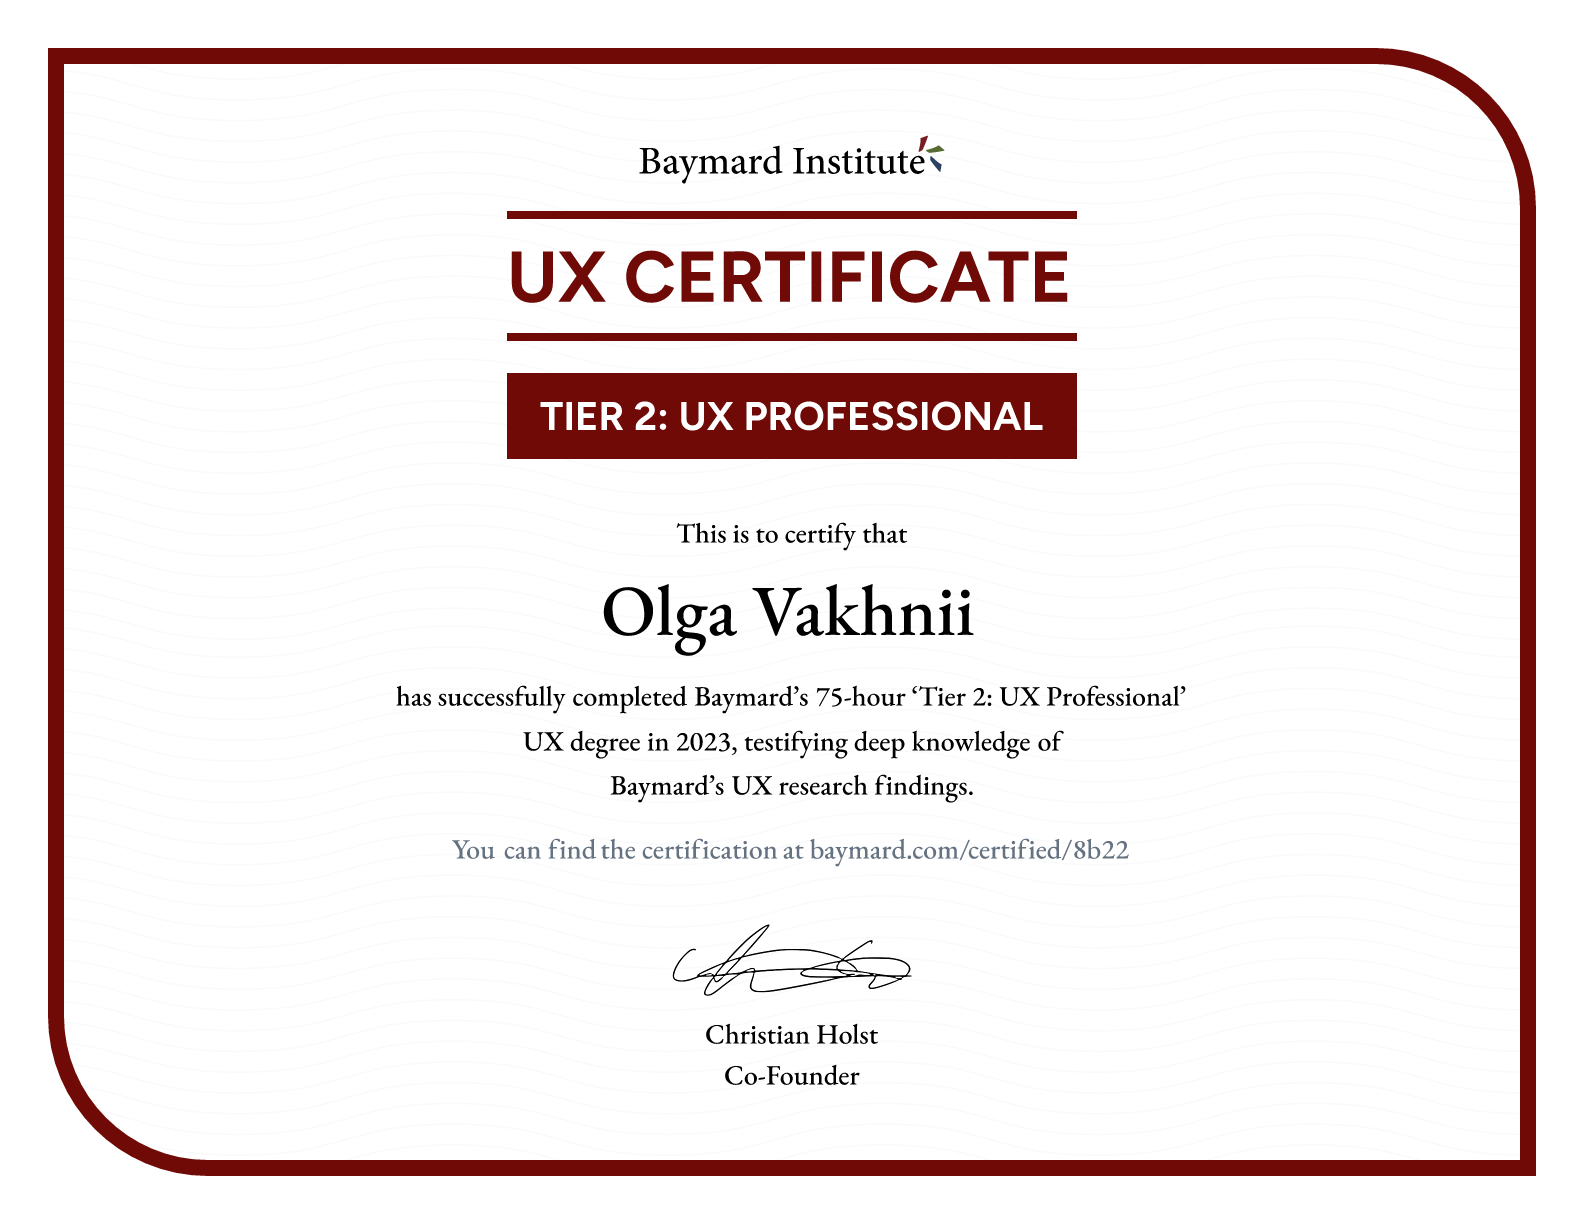 Olga Vakhnii’s certificate